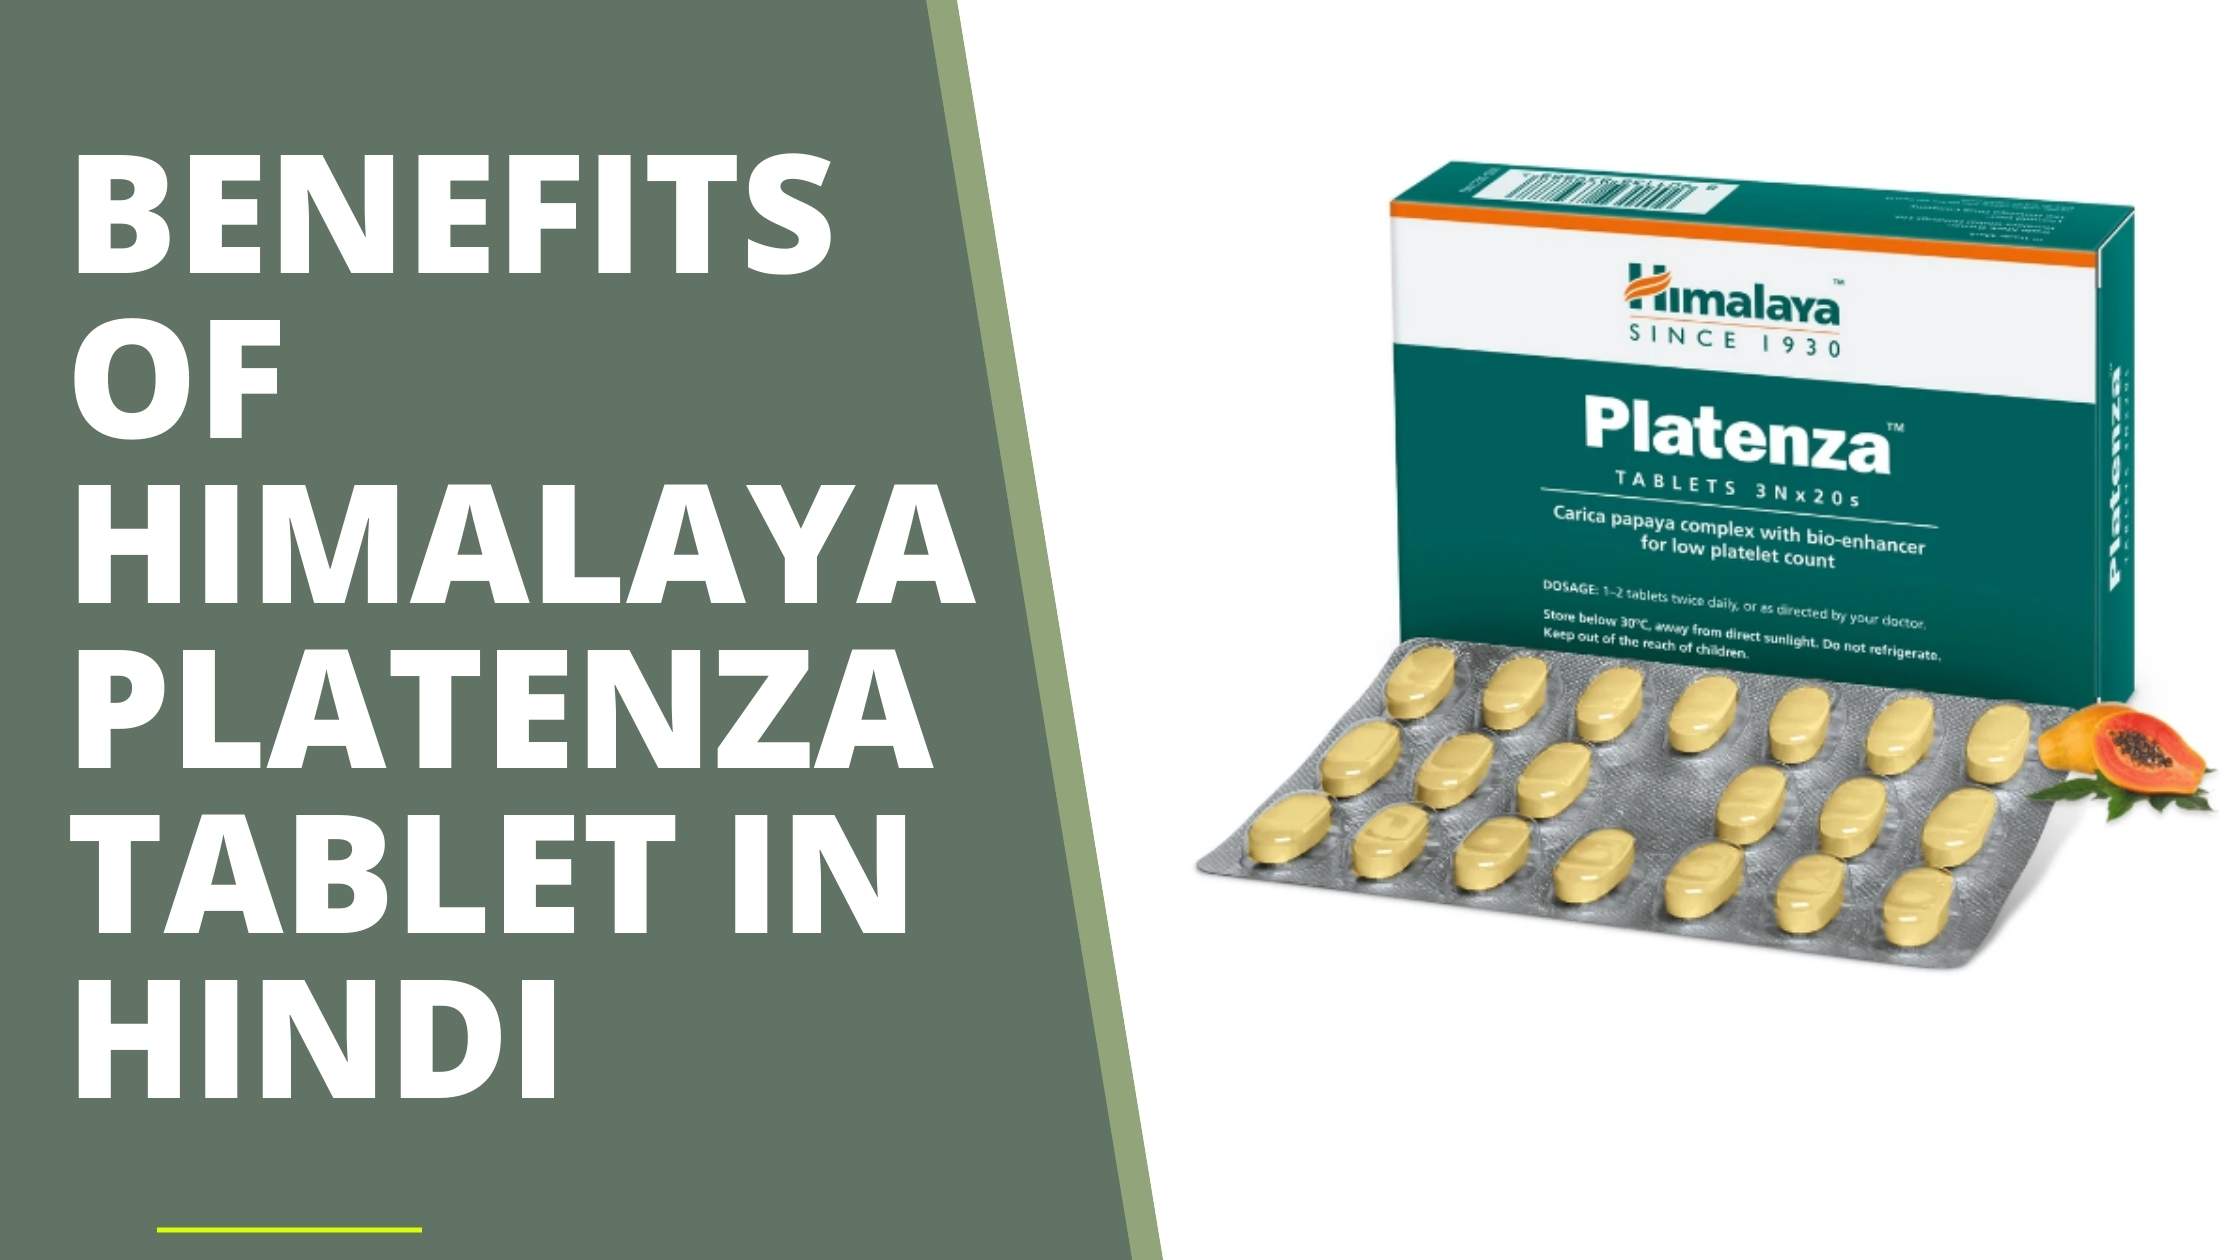 Himalaya Platenza tablet in Hindi